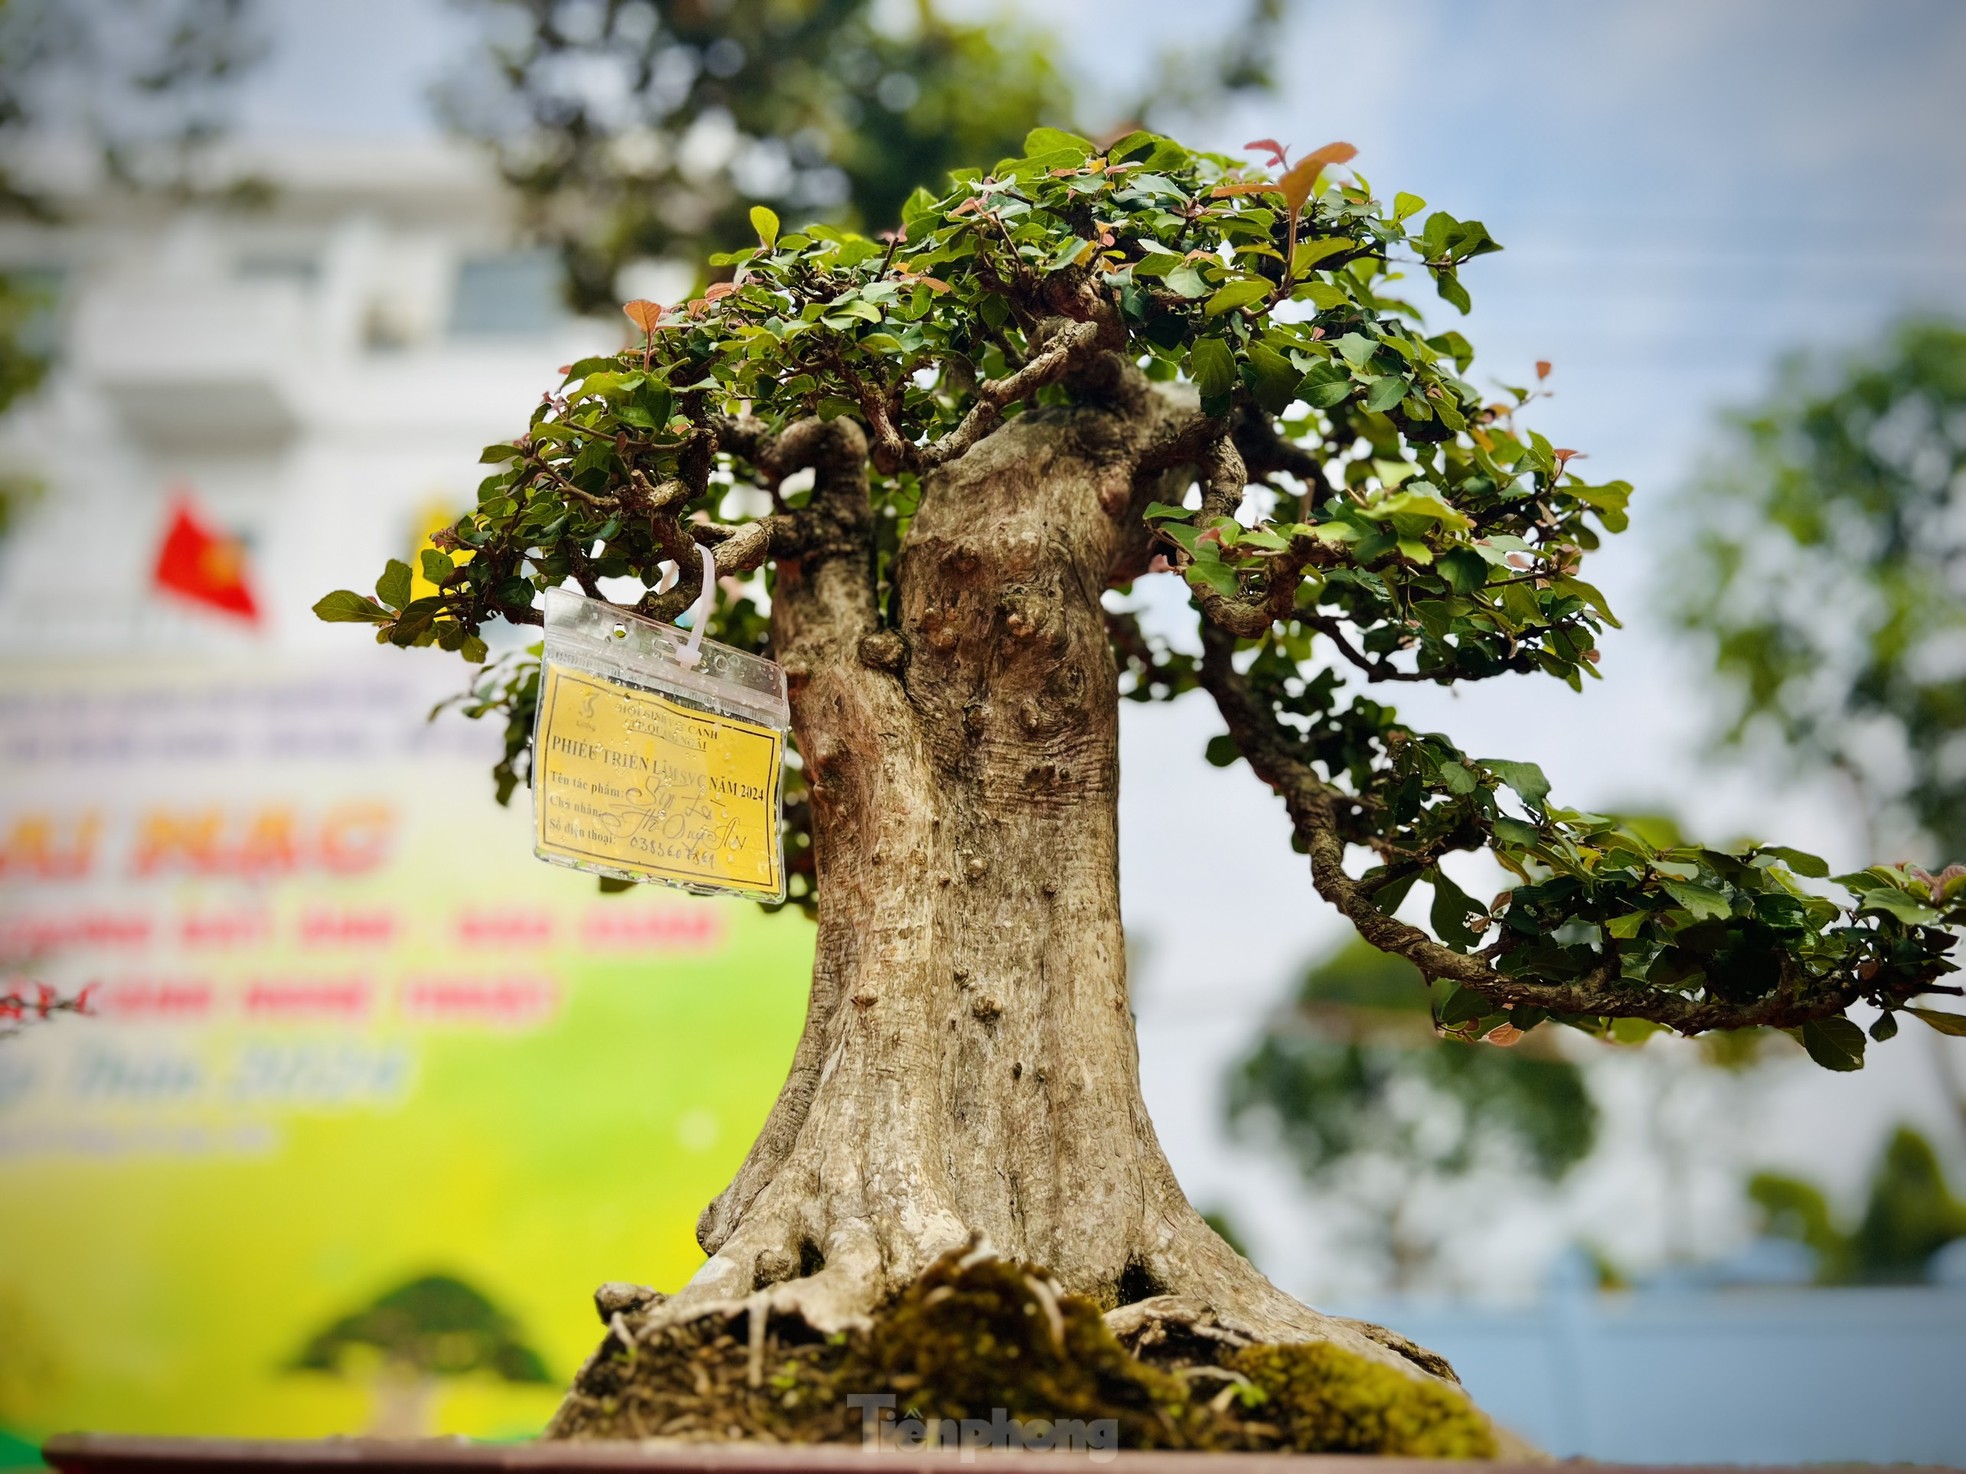 Dàn bonsai độc lạ, giá lên đến 500 triệu đồng ở Quảng Ngãi - Ảnh 12.